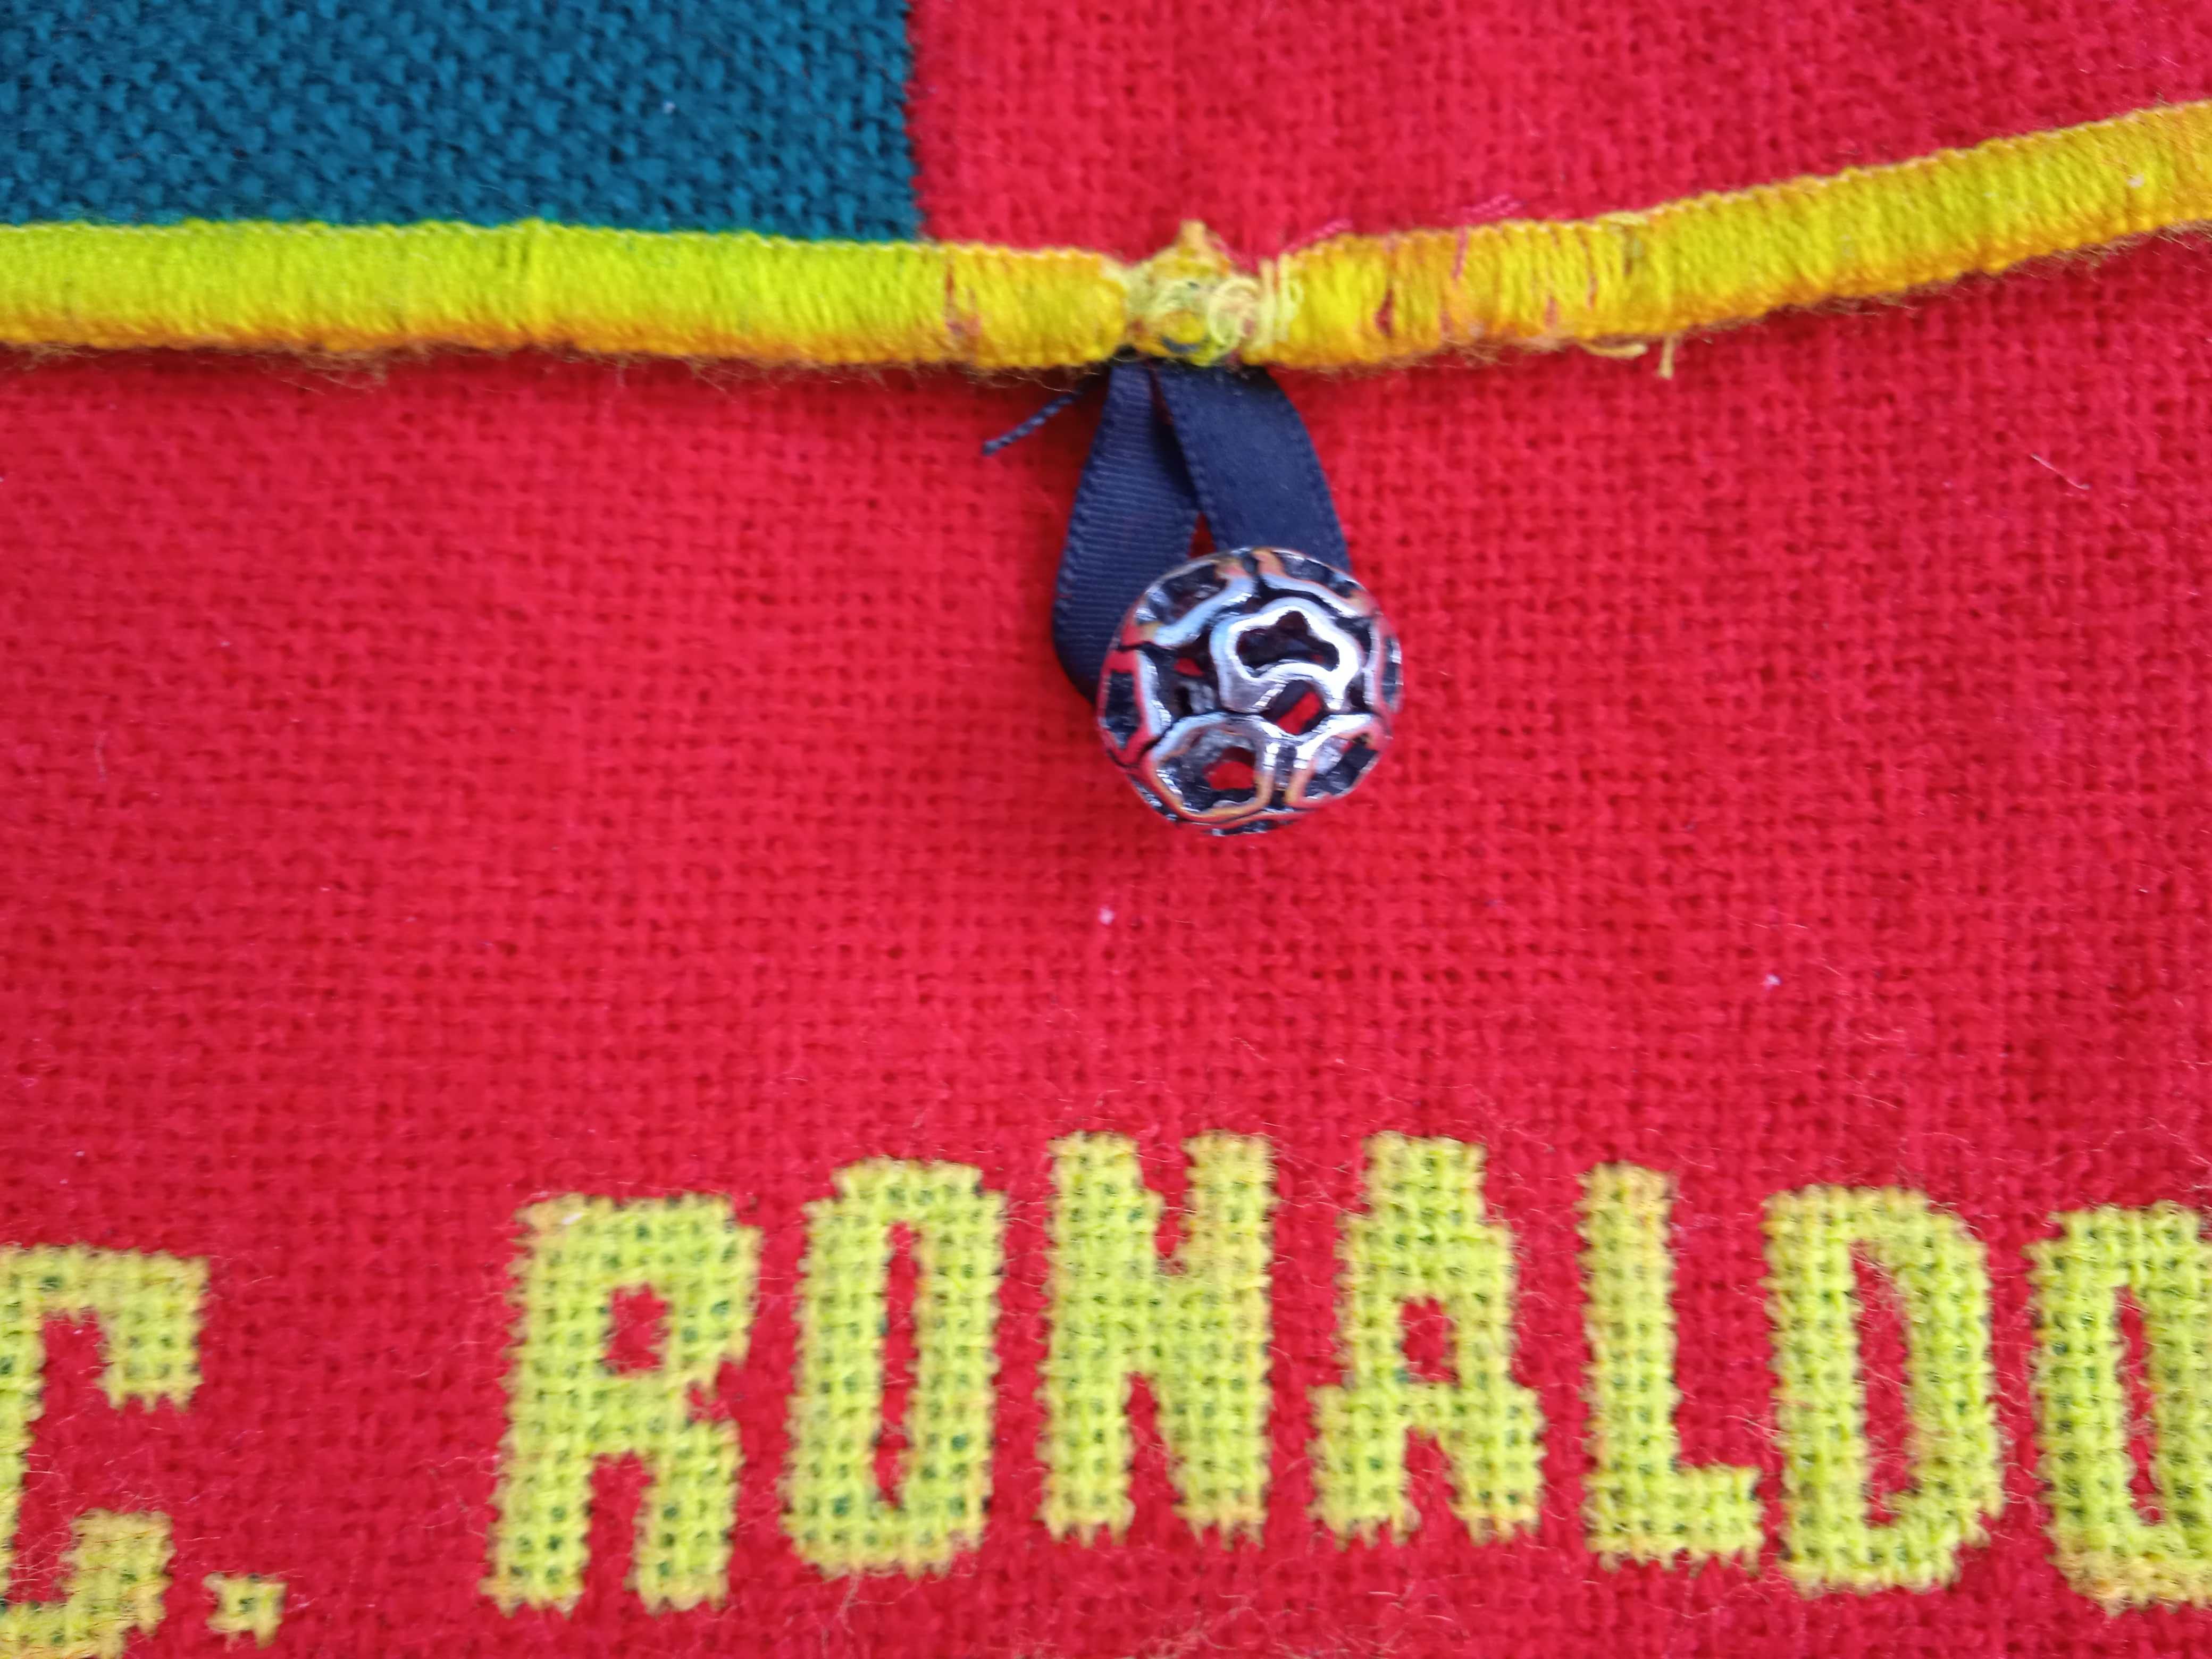 Сумка футбольного болельщика C. RONALDO PORTUGAL, текстильная.